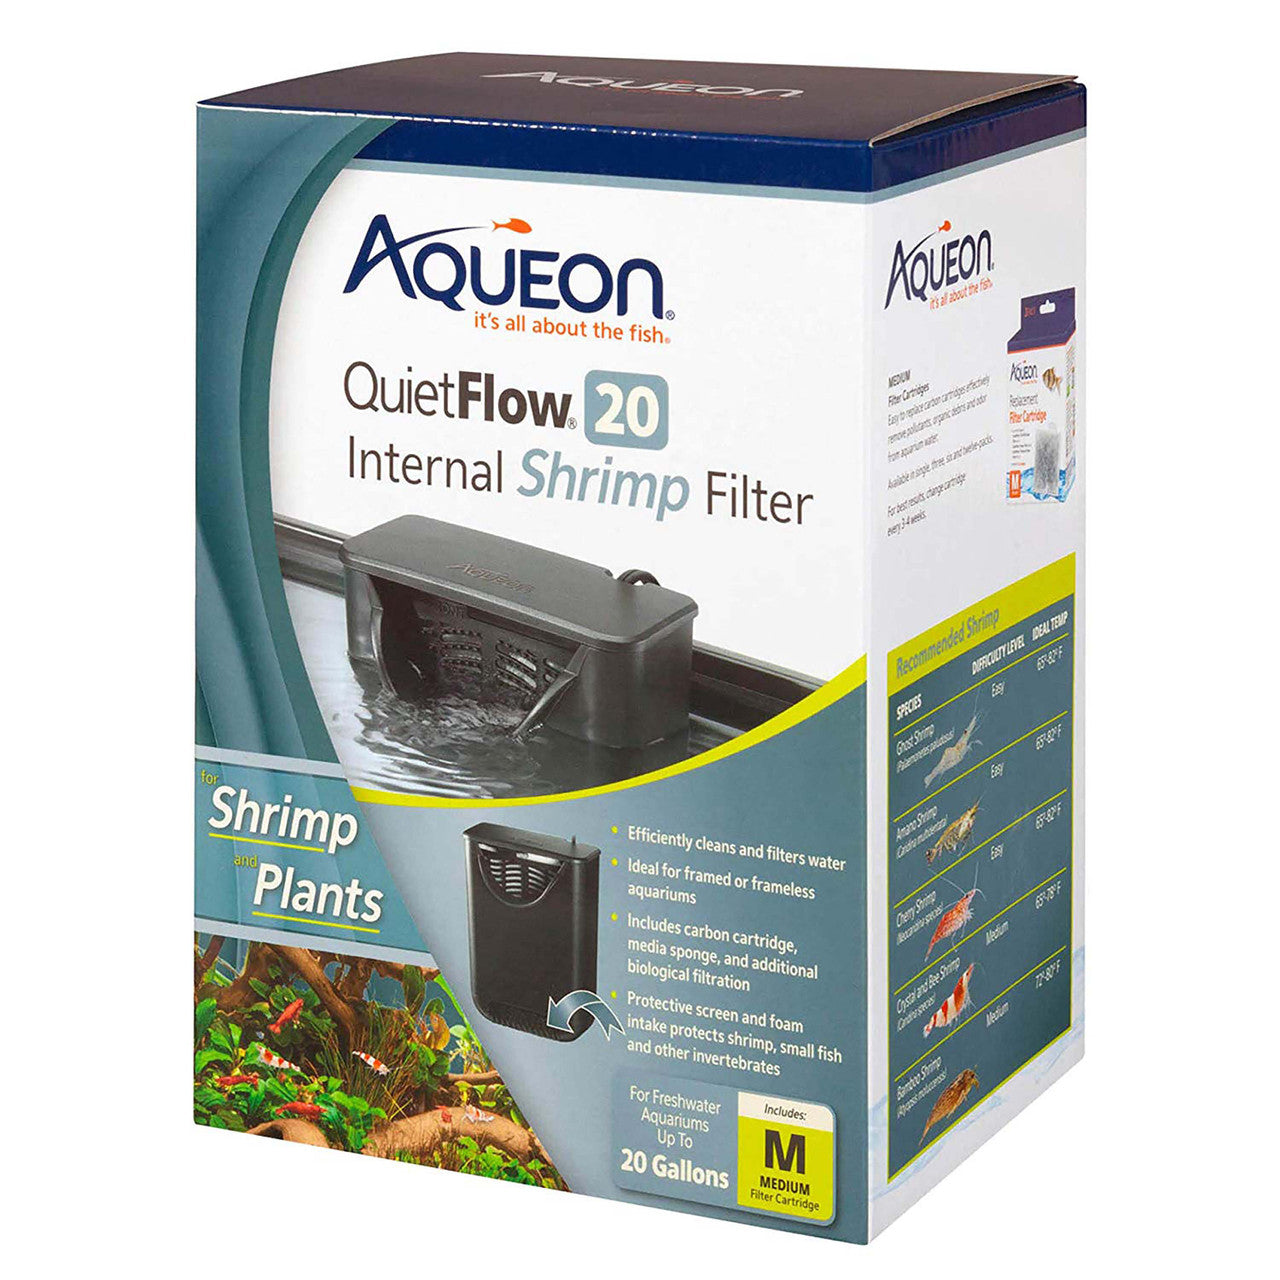 Aqueon QuietFlow Internal Shrimp Filter 20 Gallons